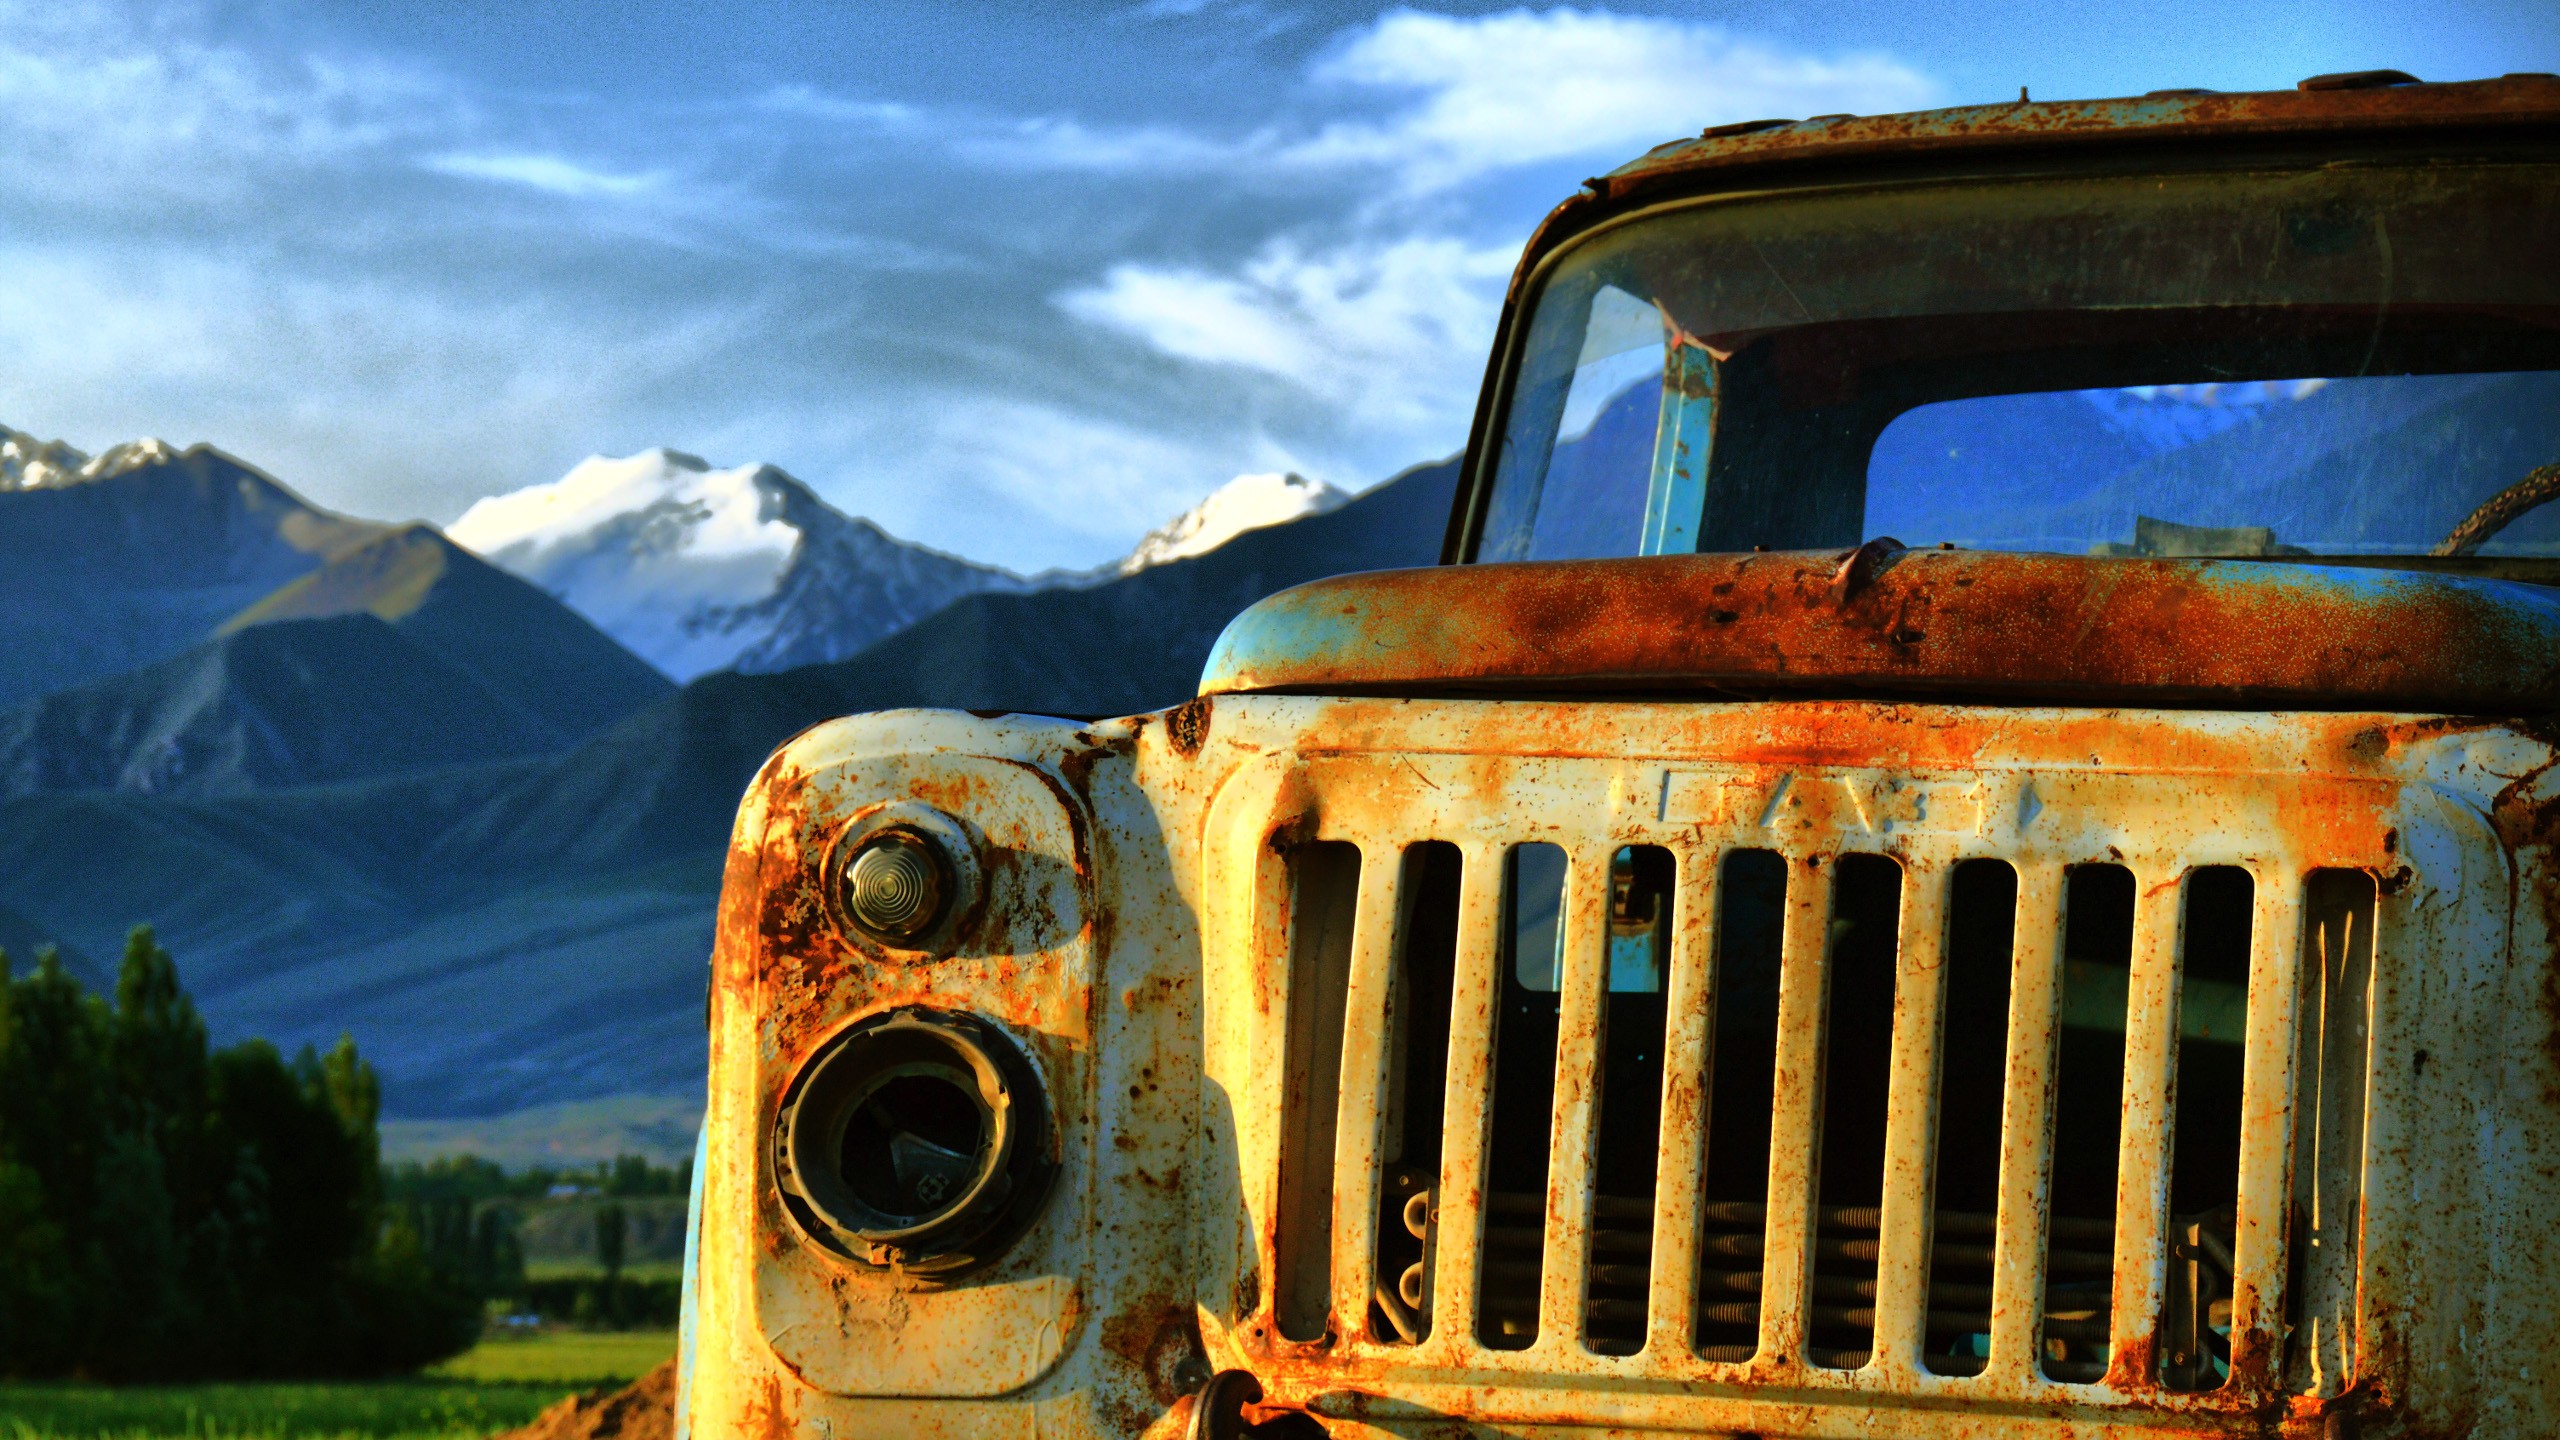 General 2560x1440 Kyrgyzstan truck wreck GAZ mountains rust car outdoors